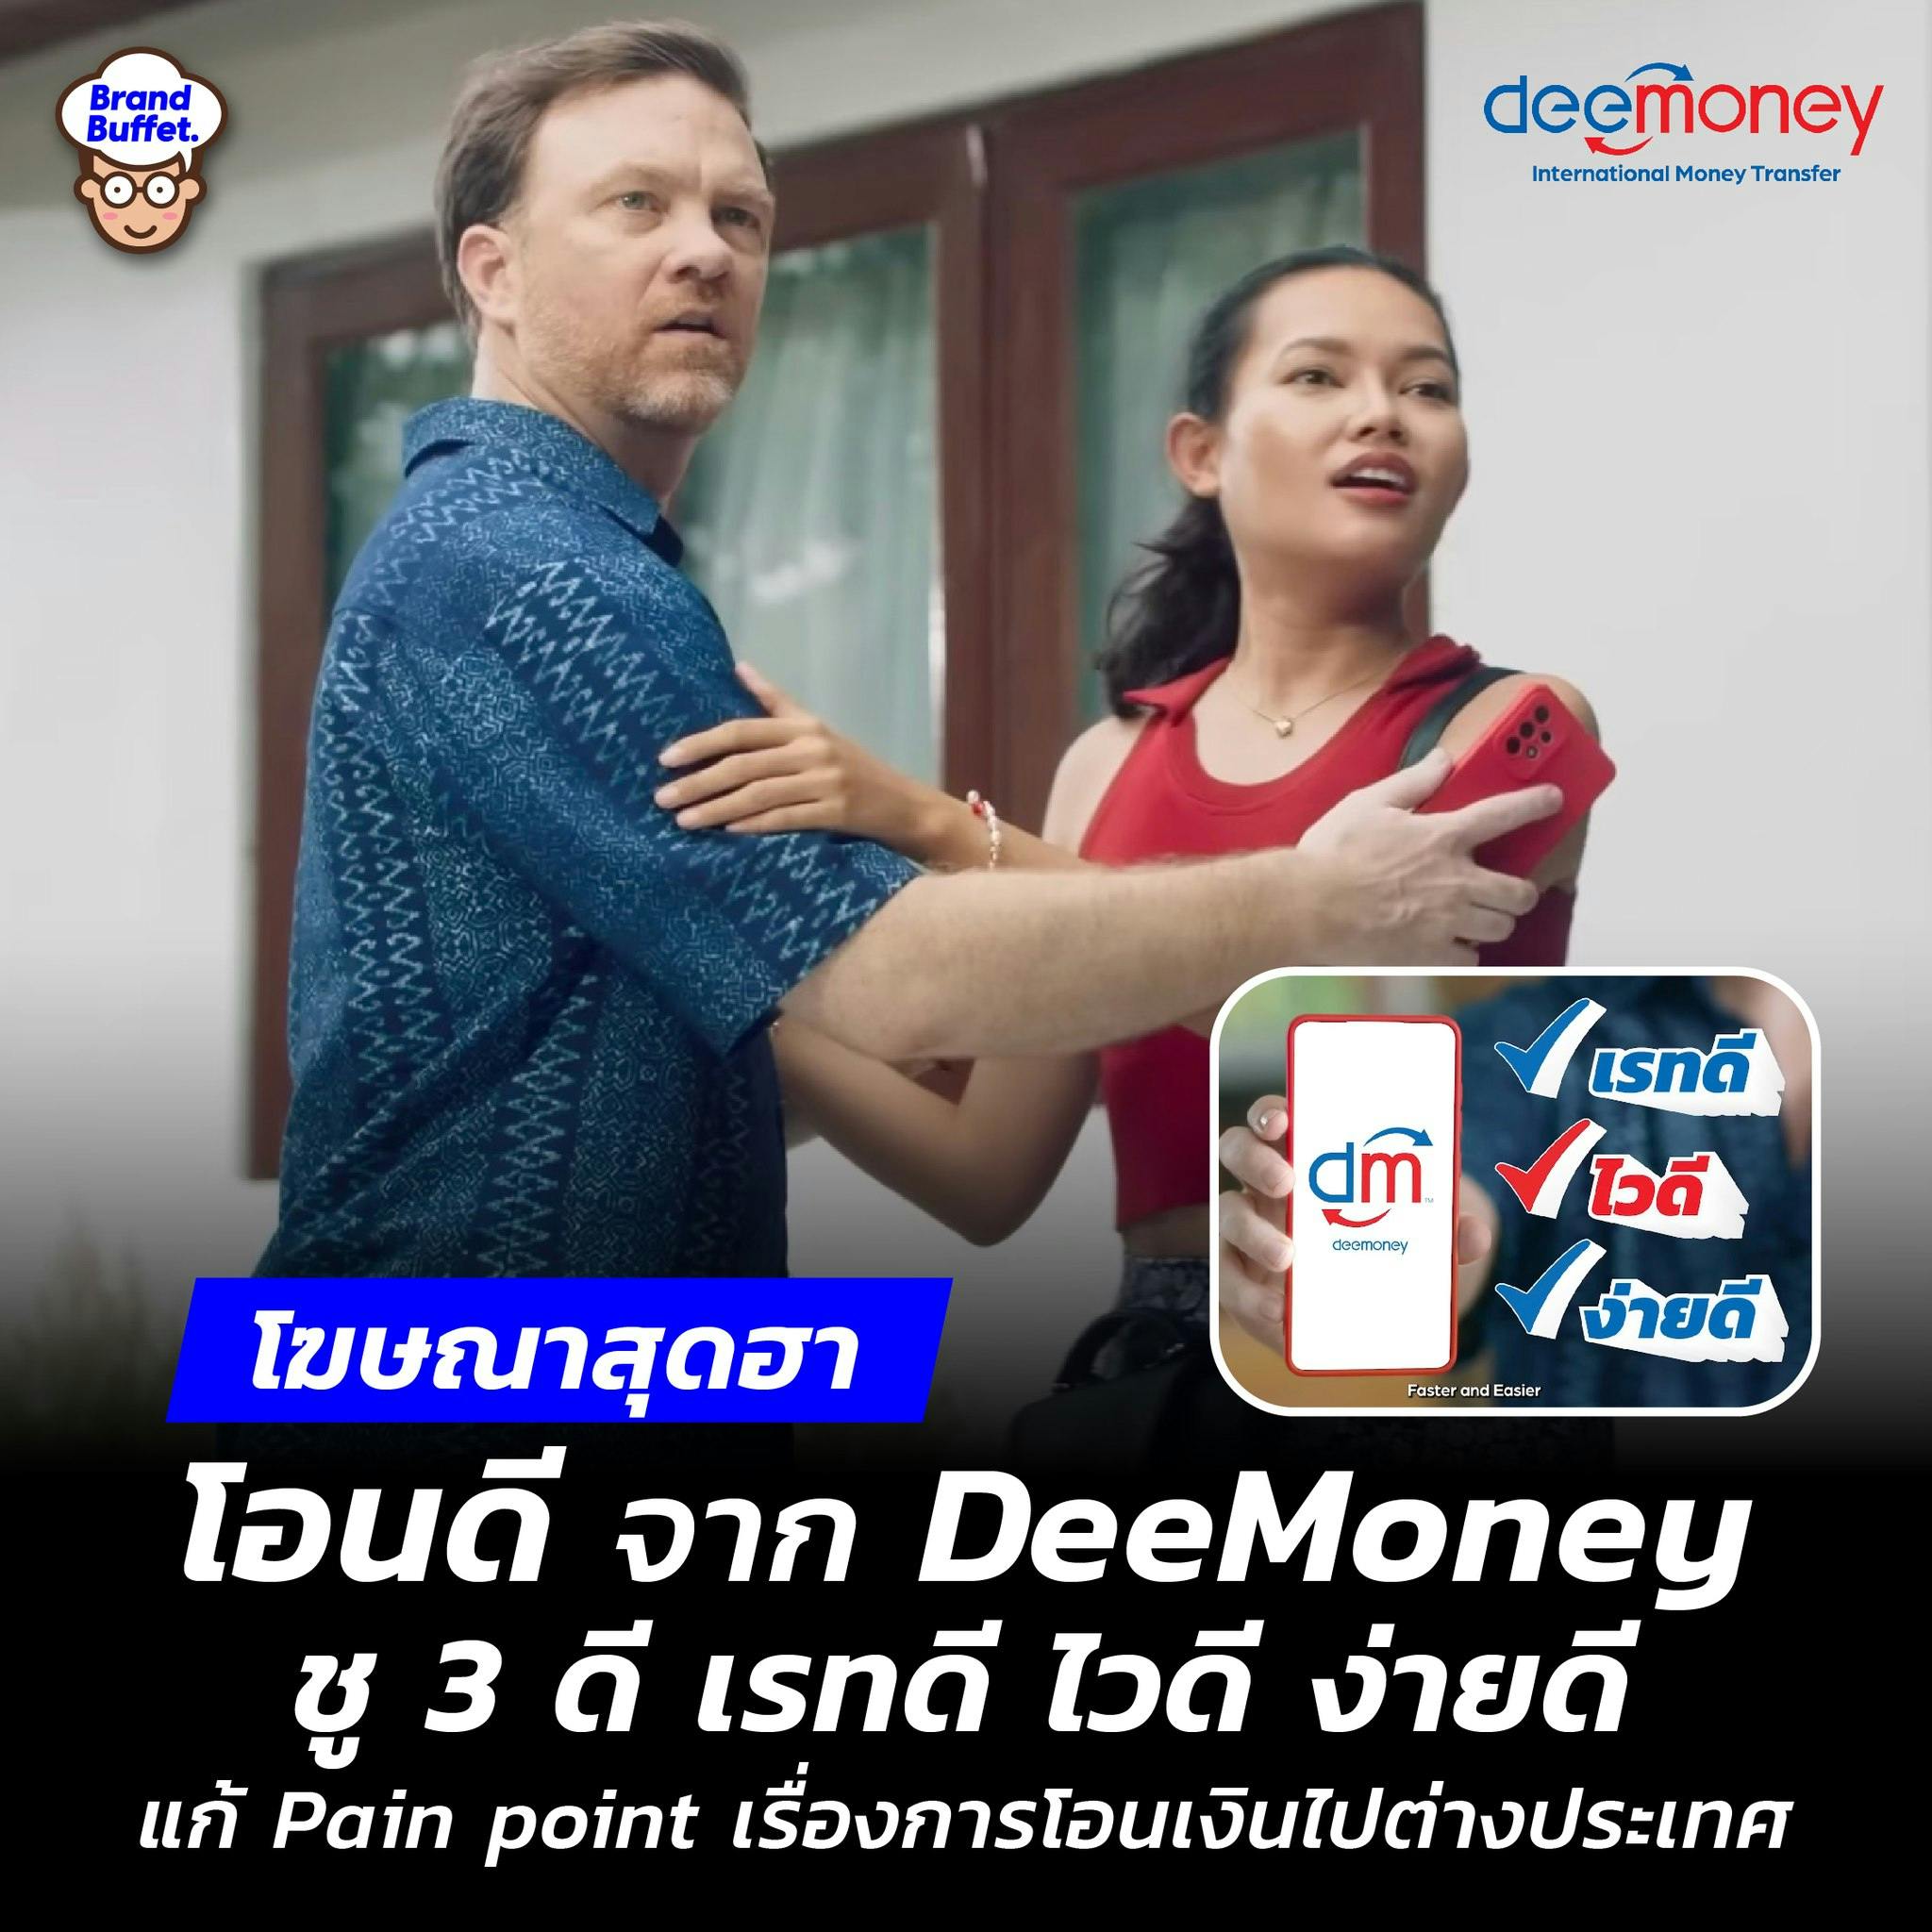 เจาะลึกเบื้องหลัง โฆษณาสุดฮา “โอนดี” จาก DeeMoney ชู 3 ดี “เรทดี ไวดี ง่ายดี” แก้ Pain point เรื่องการโอนเงินไปต่างประเทศ